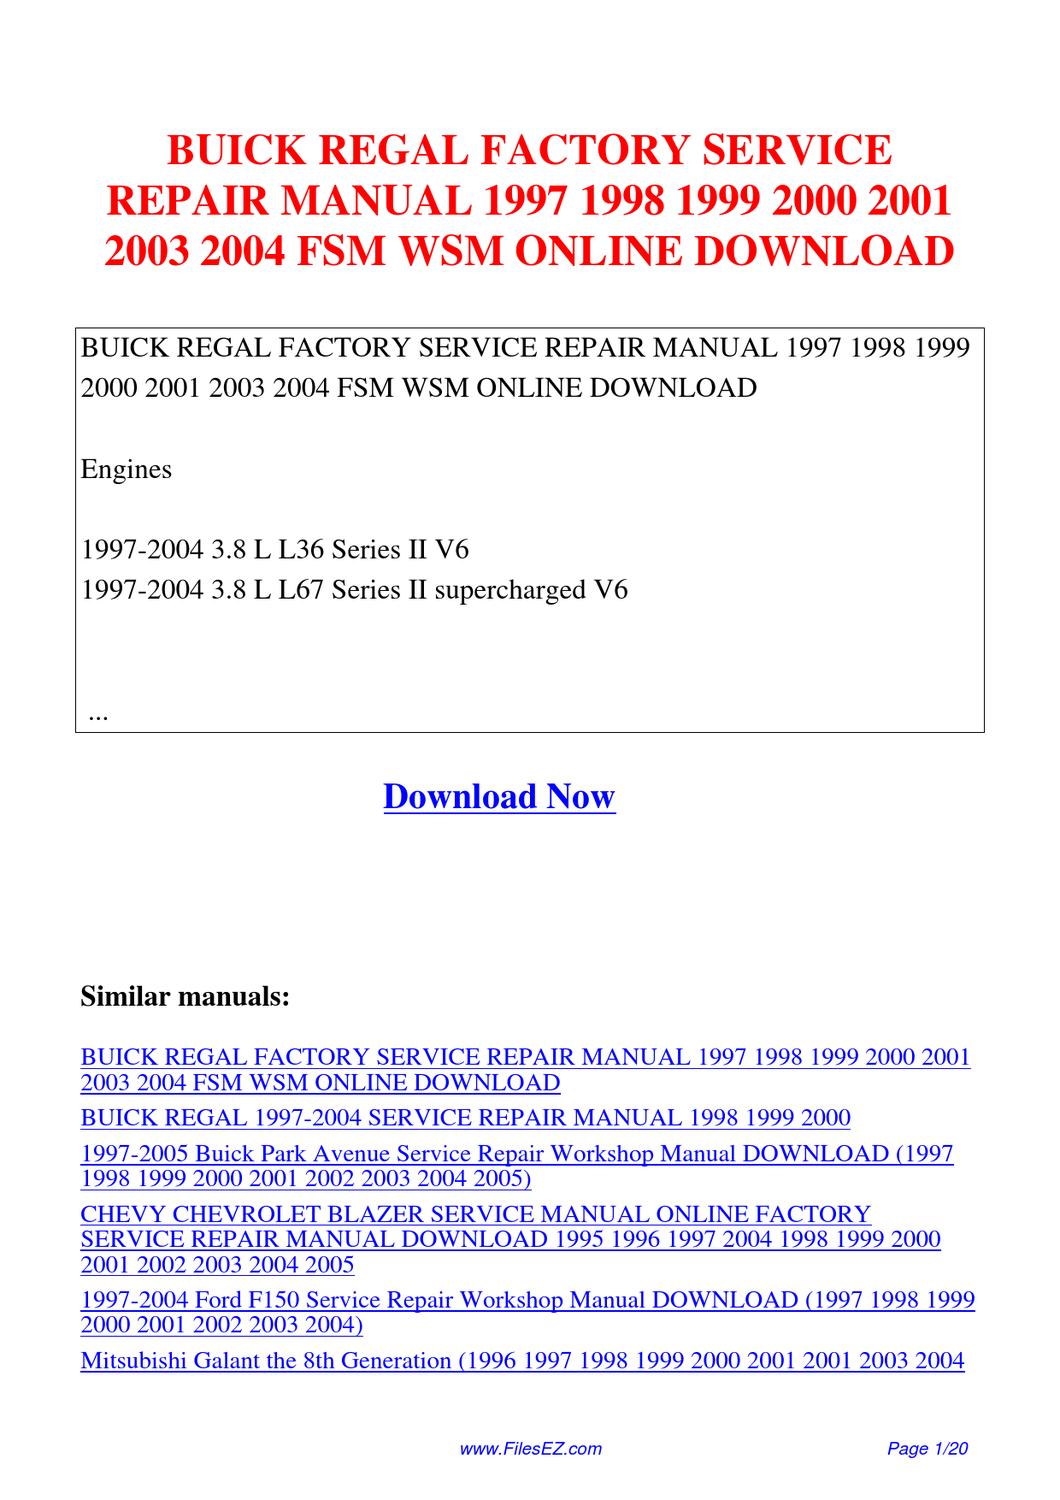 2001 buick century repair manual pdf